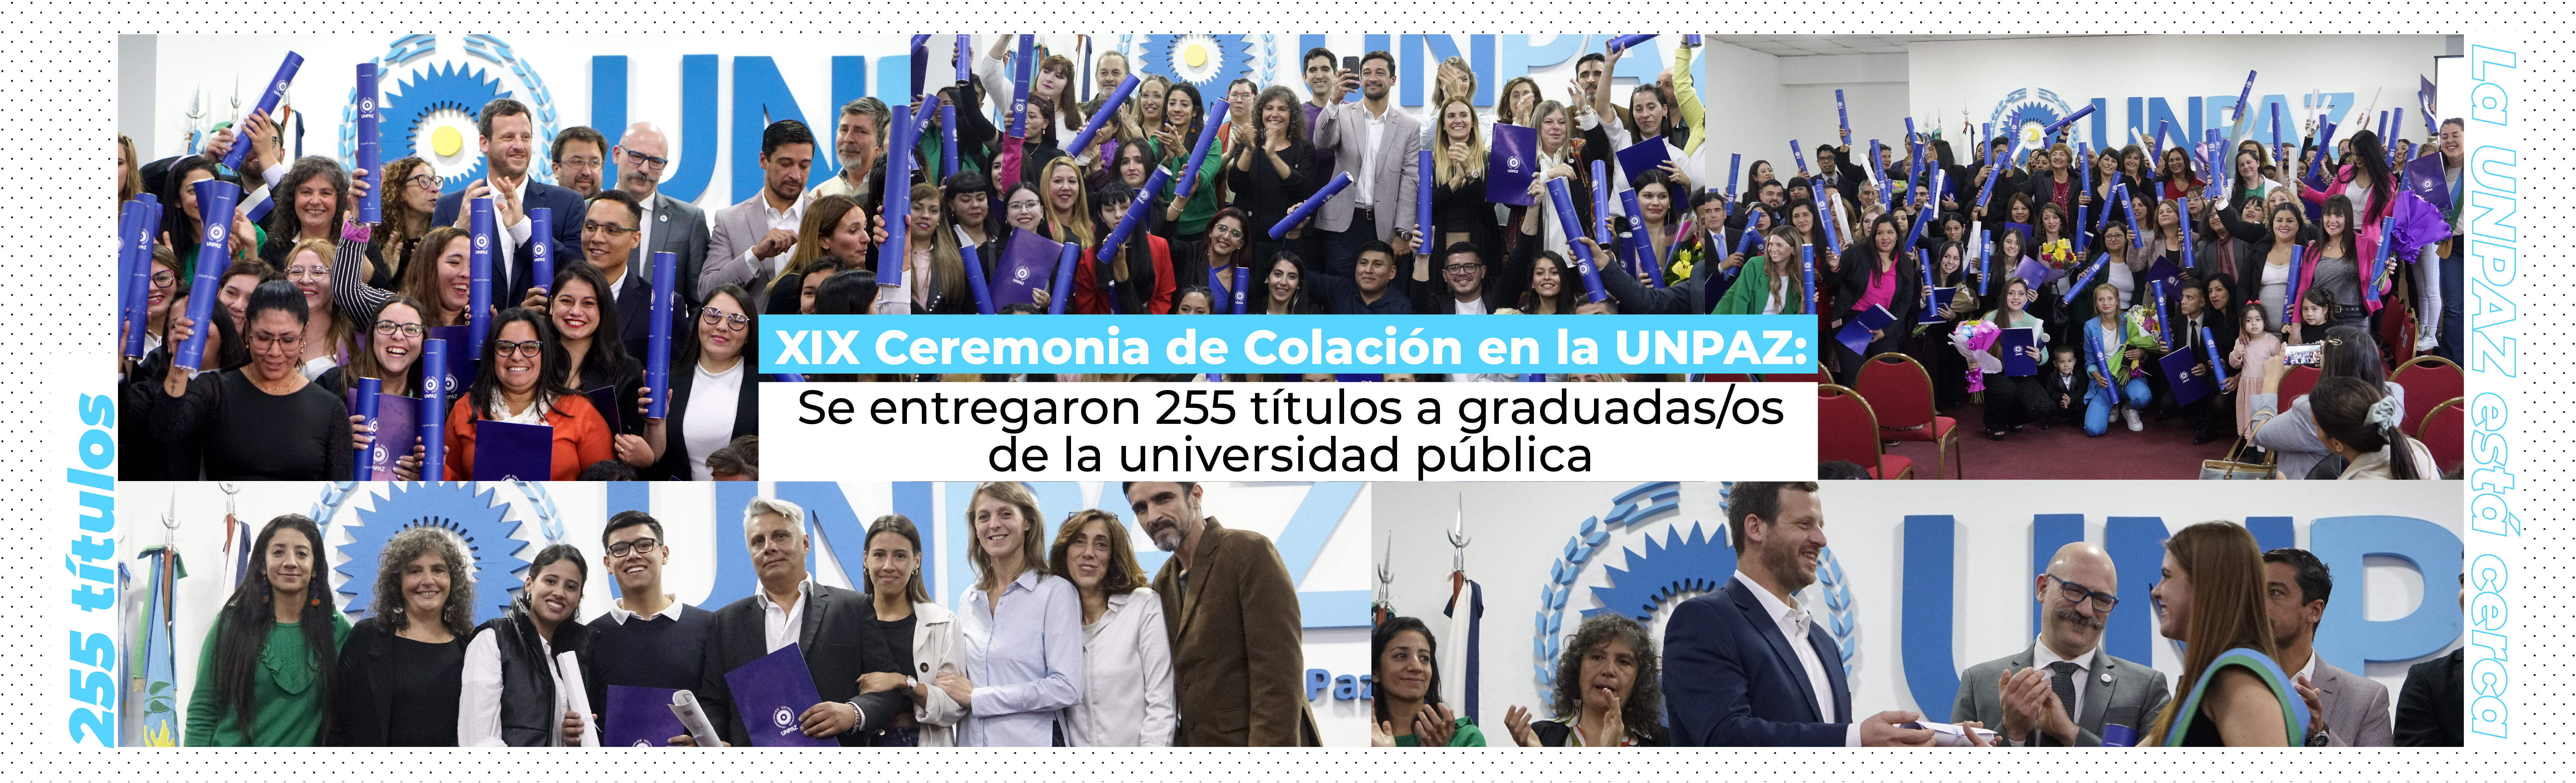 XIX Ceremonia de Colación en la UNPAZ: Se entregaron 255 títulos a graduadas/os de la universidad pública